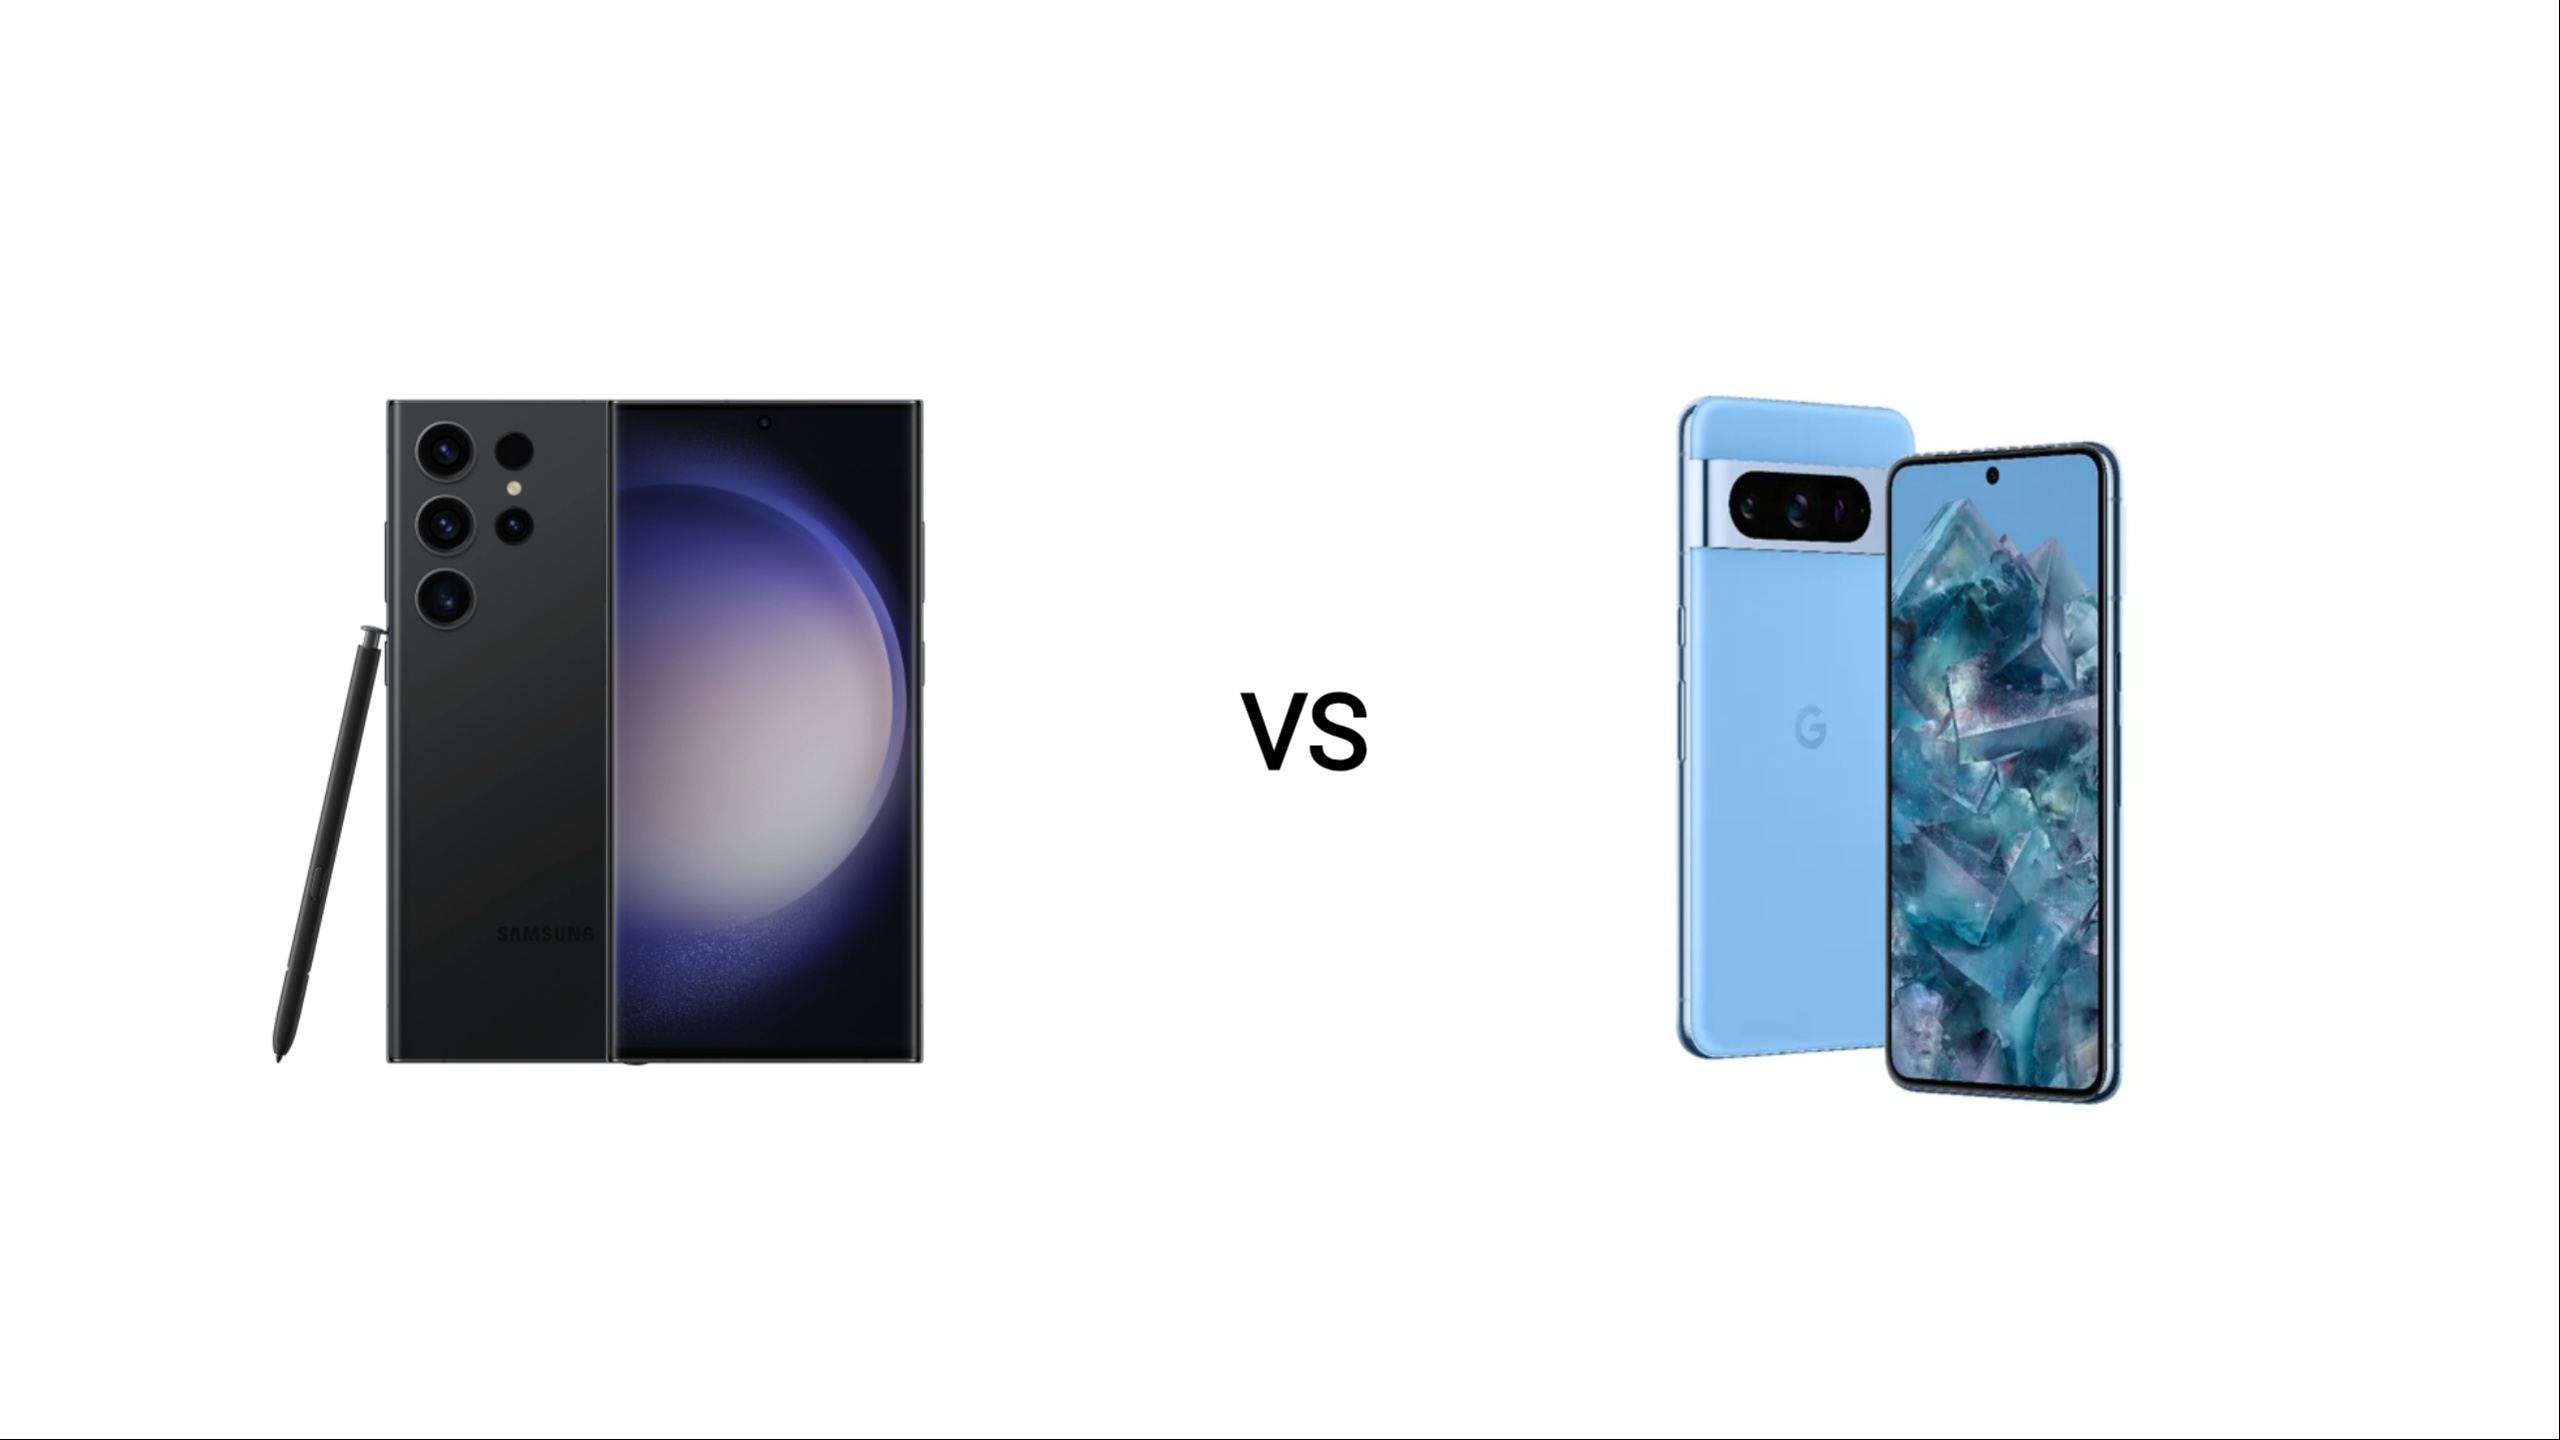 Samsung Galaxy S24 Ultra vs Pixel 8 Pro